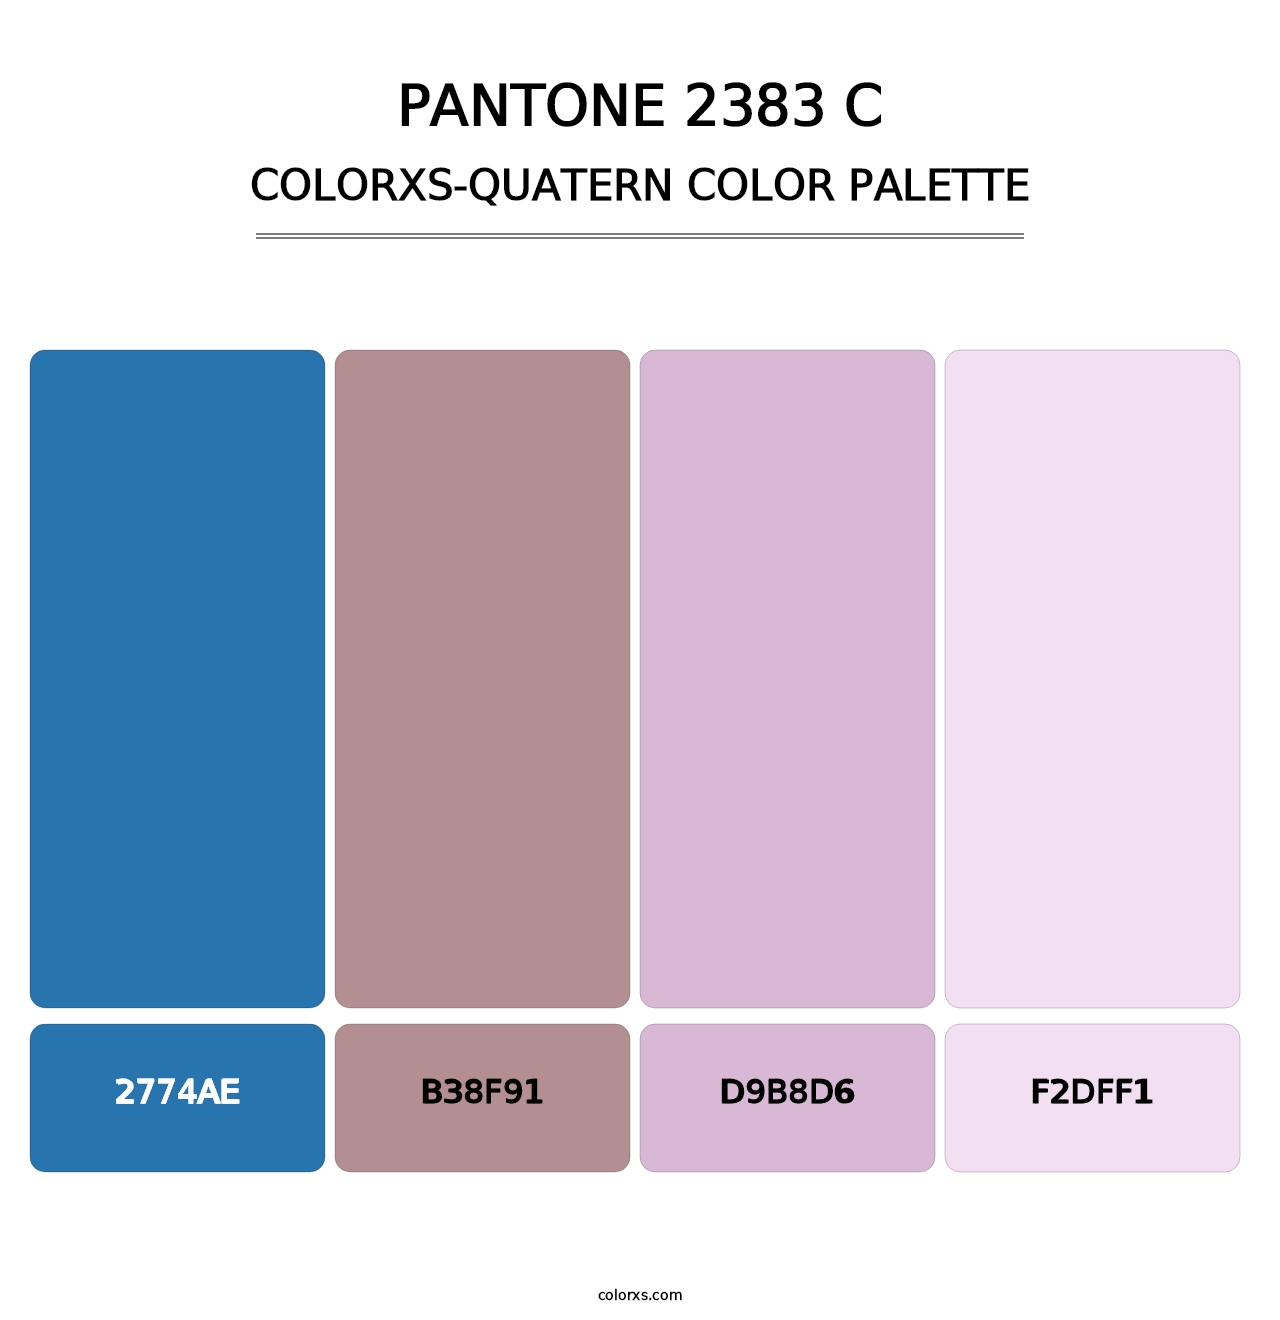 PANTONE 2383 C - Colorxs Quatern Palette